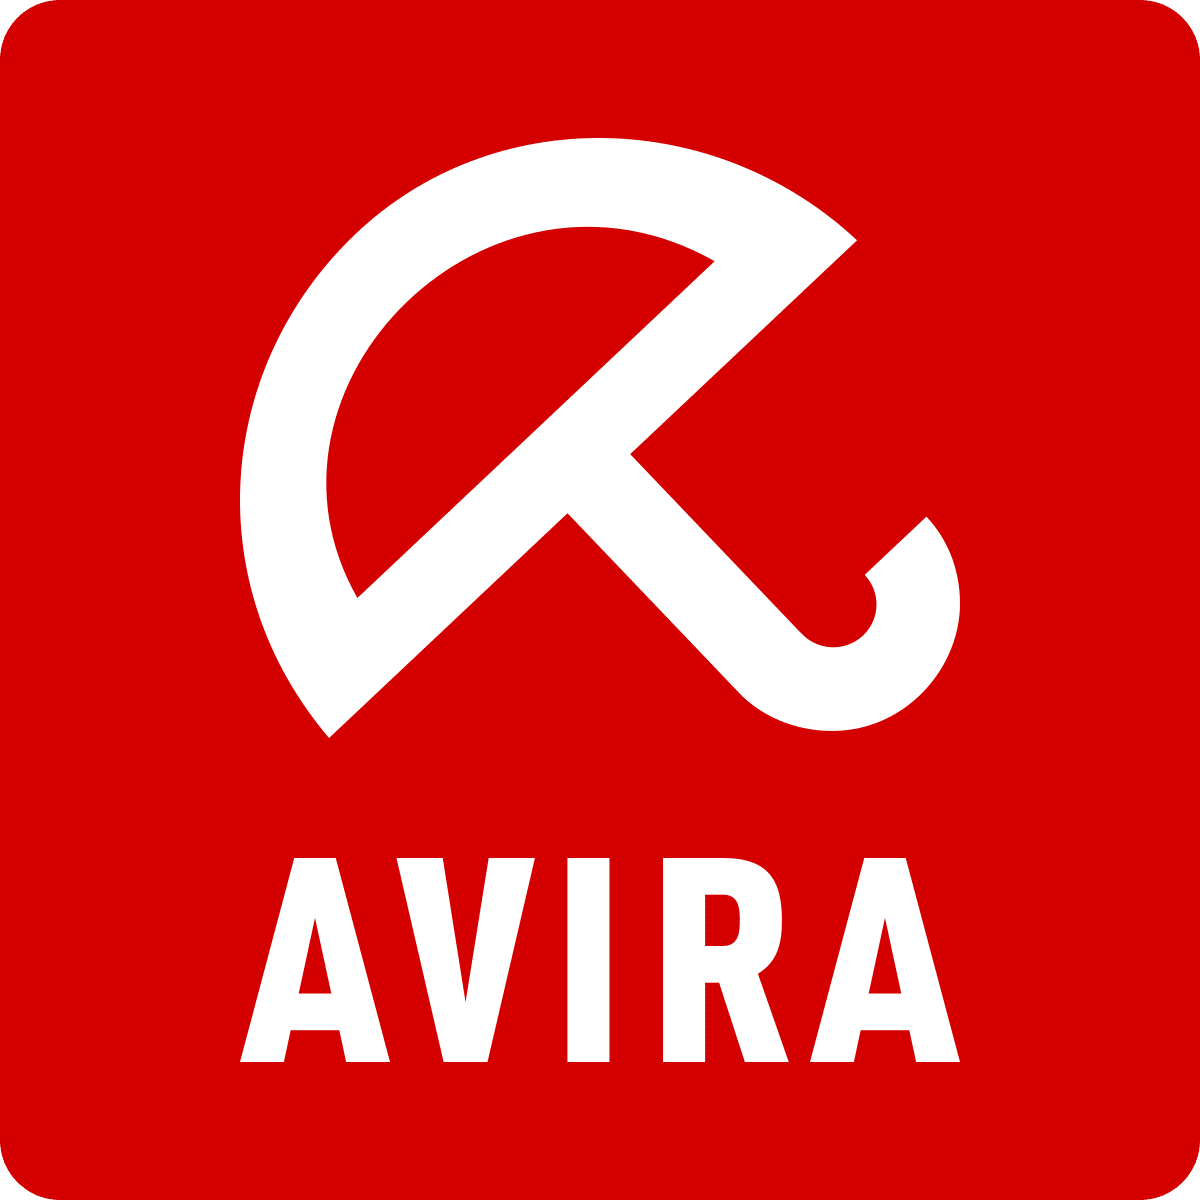 avira antivirus pro 2020 free download